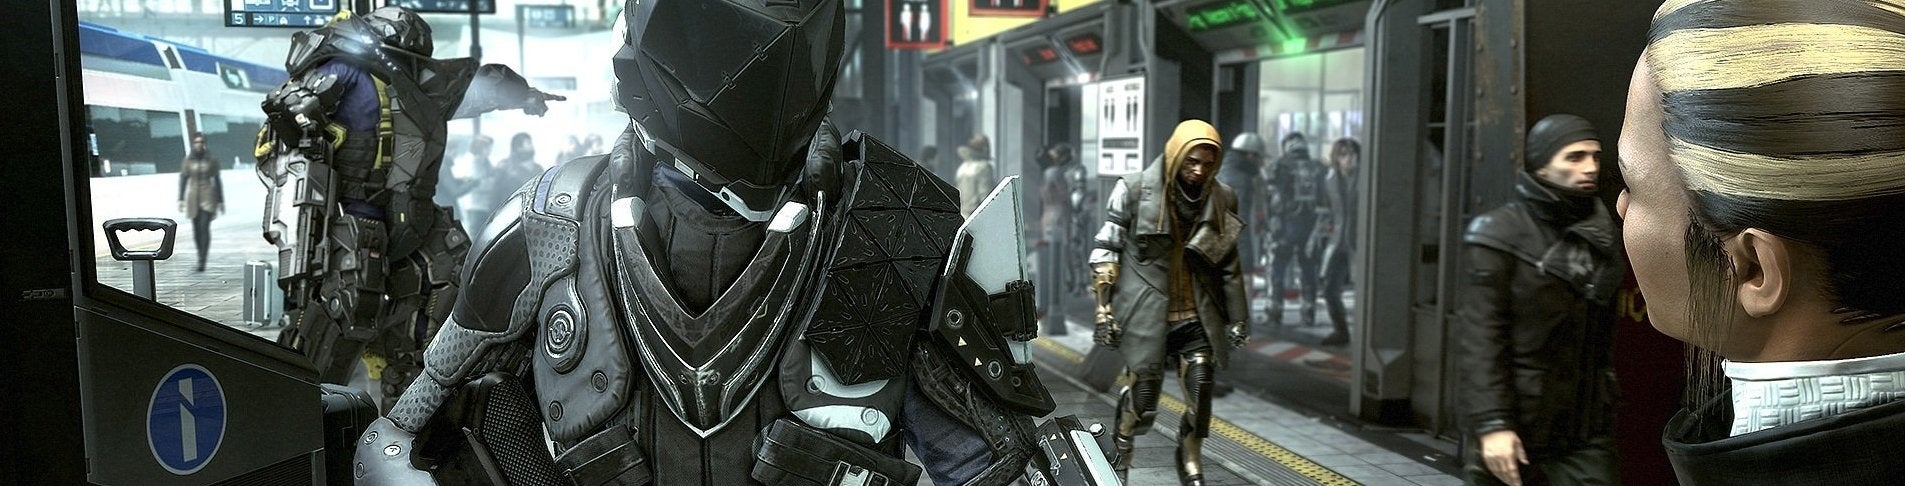 Obrazki dla Deus Ex: Mankind Divided - walki z bossami w szczegółach